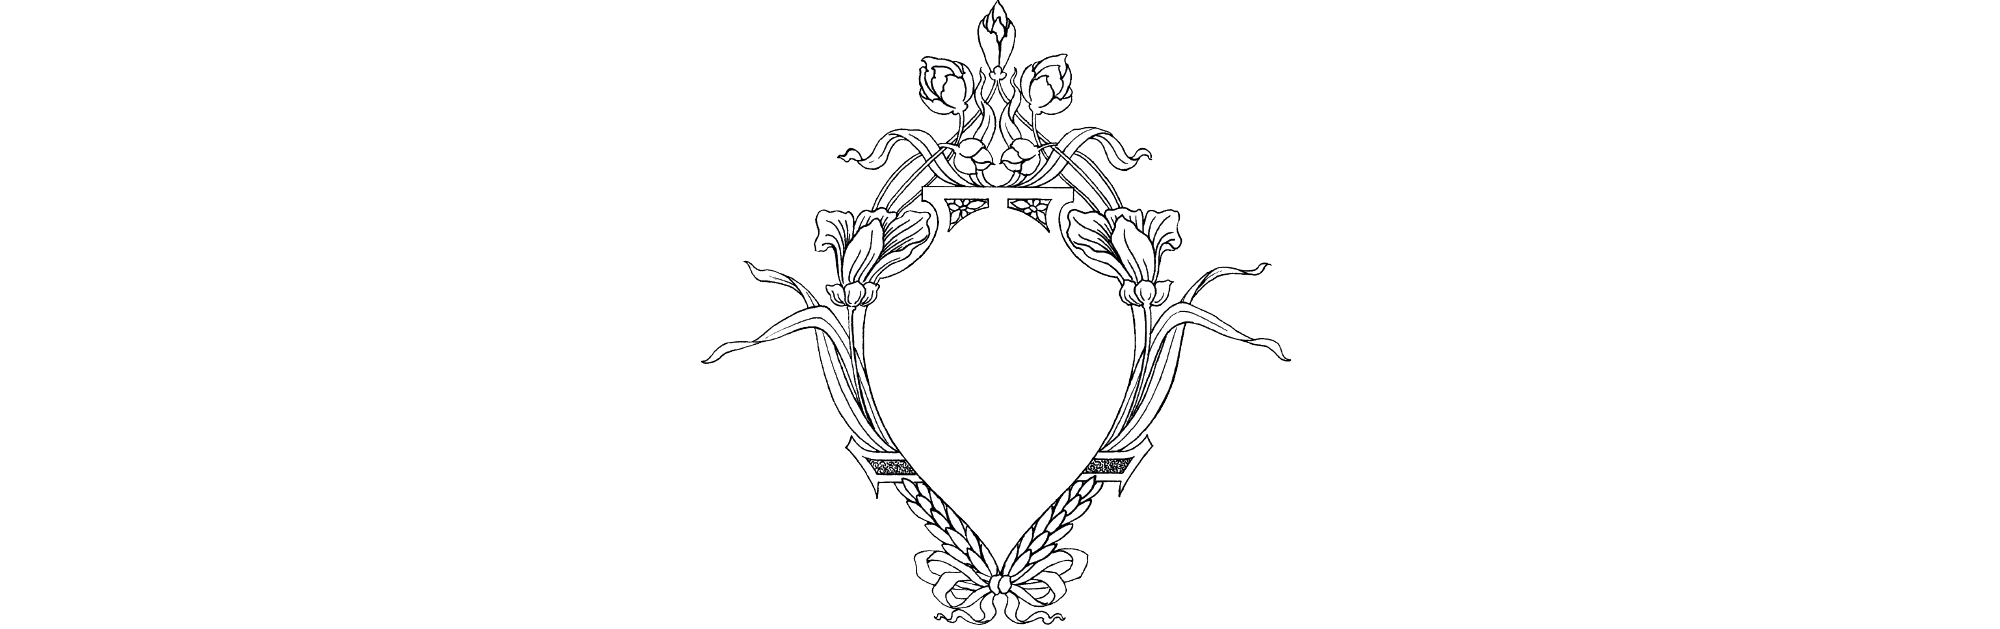 Logo restaurante valdemoro opera Vivaldi